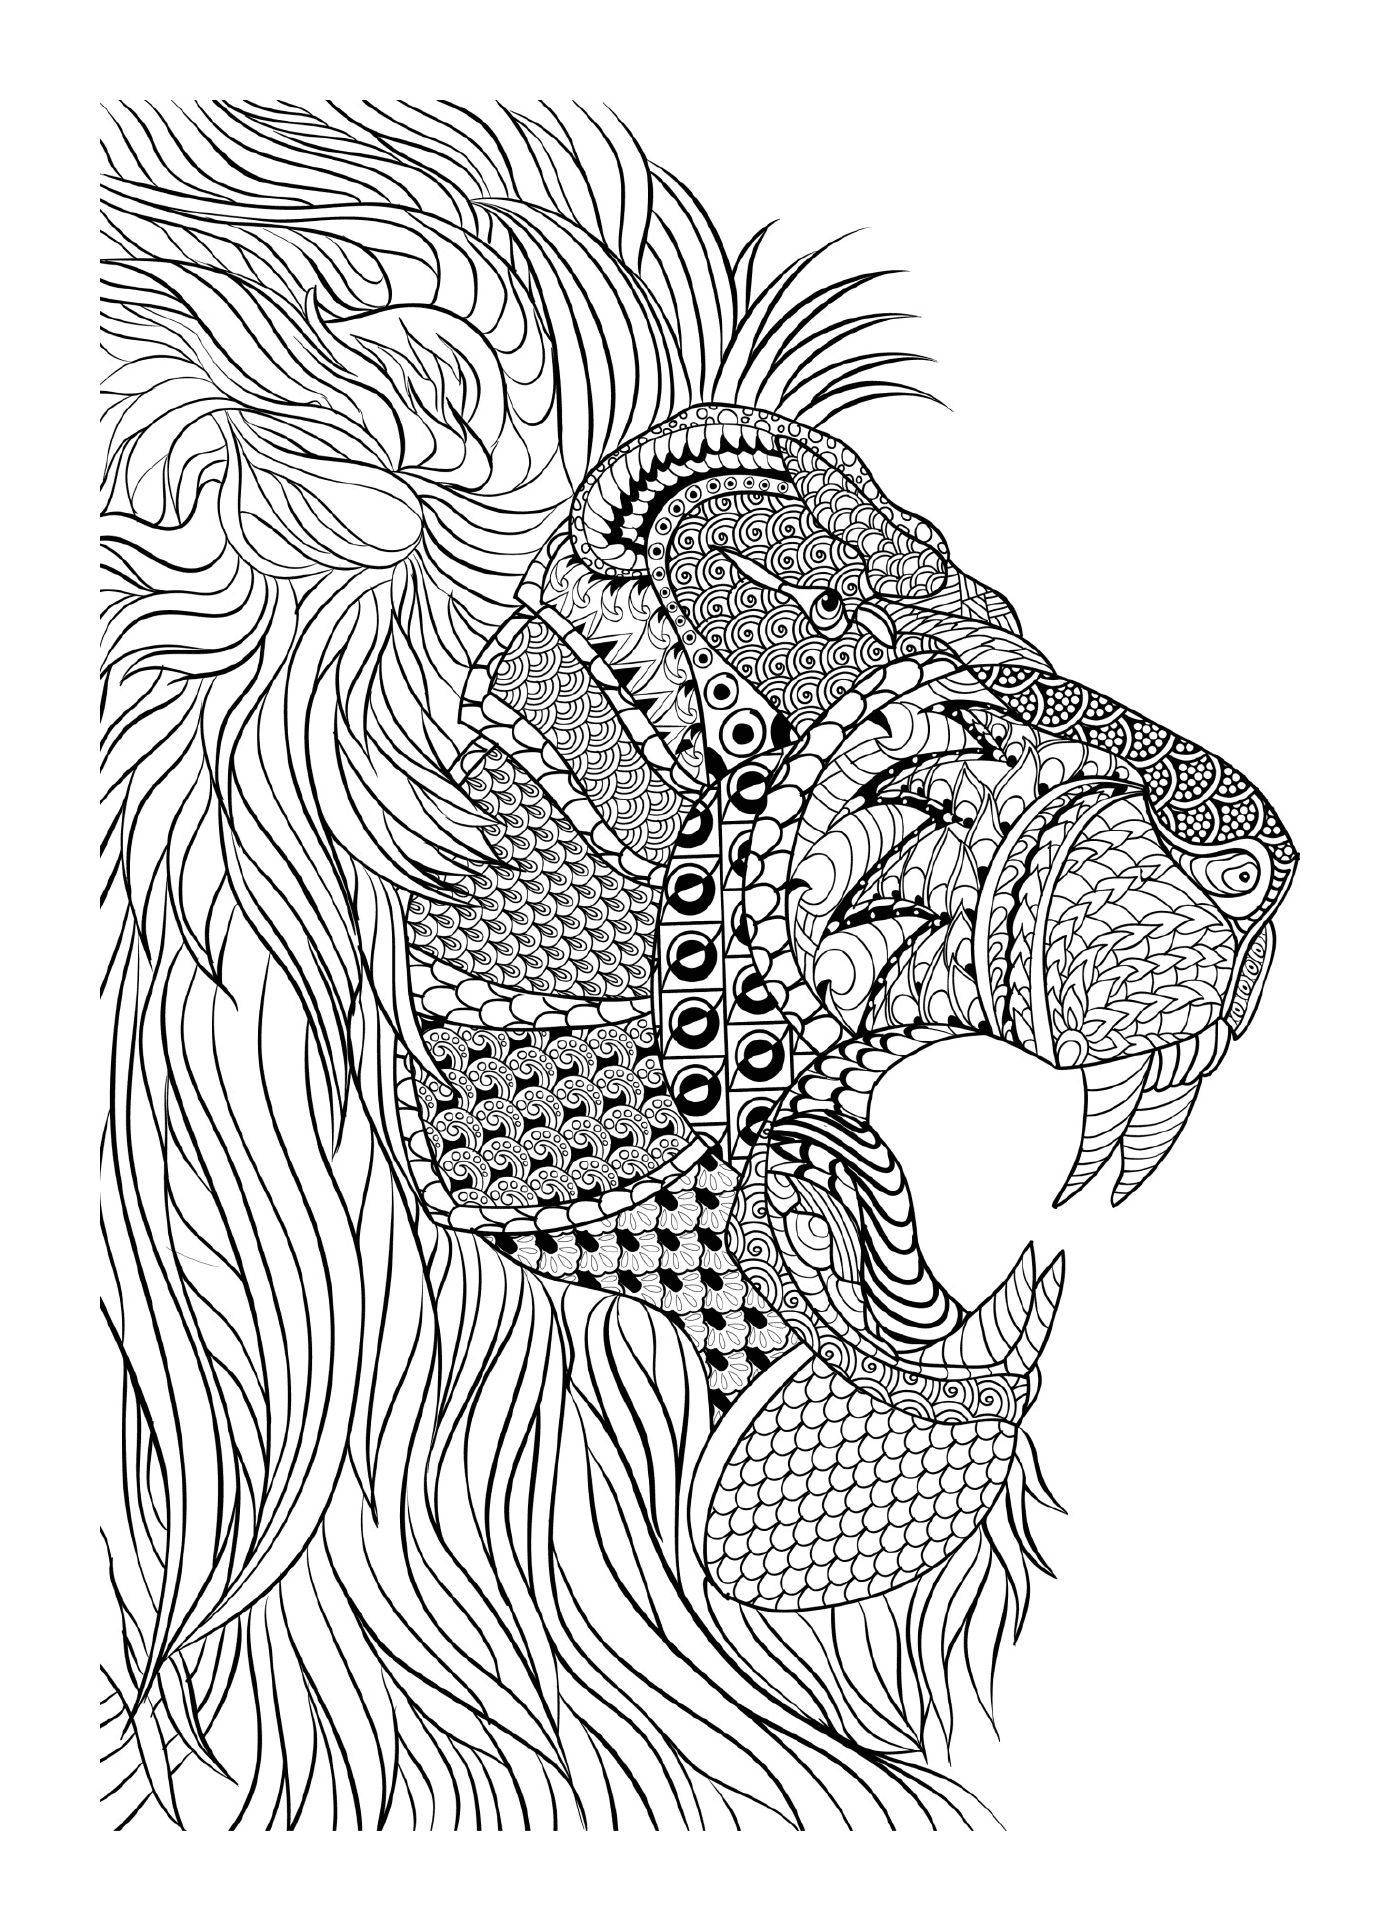  A lion 